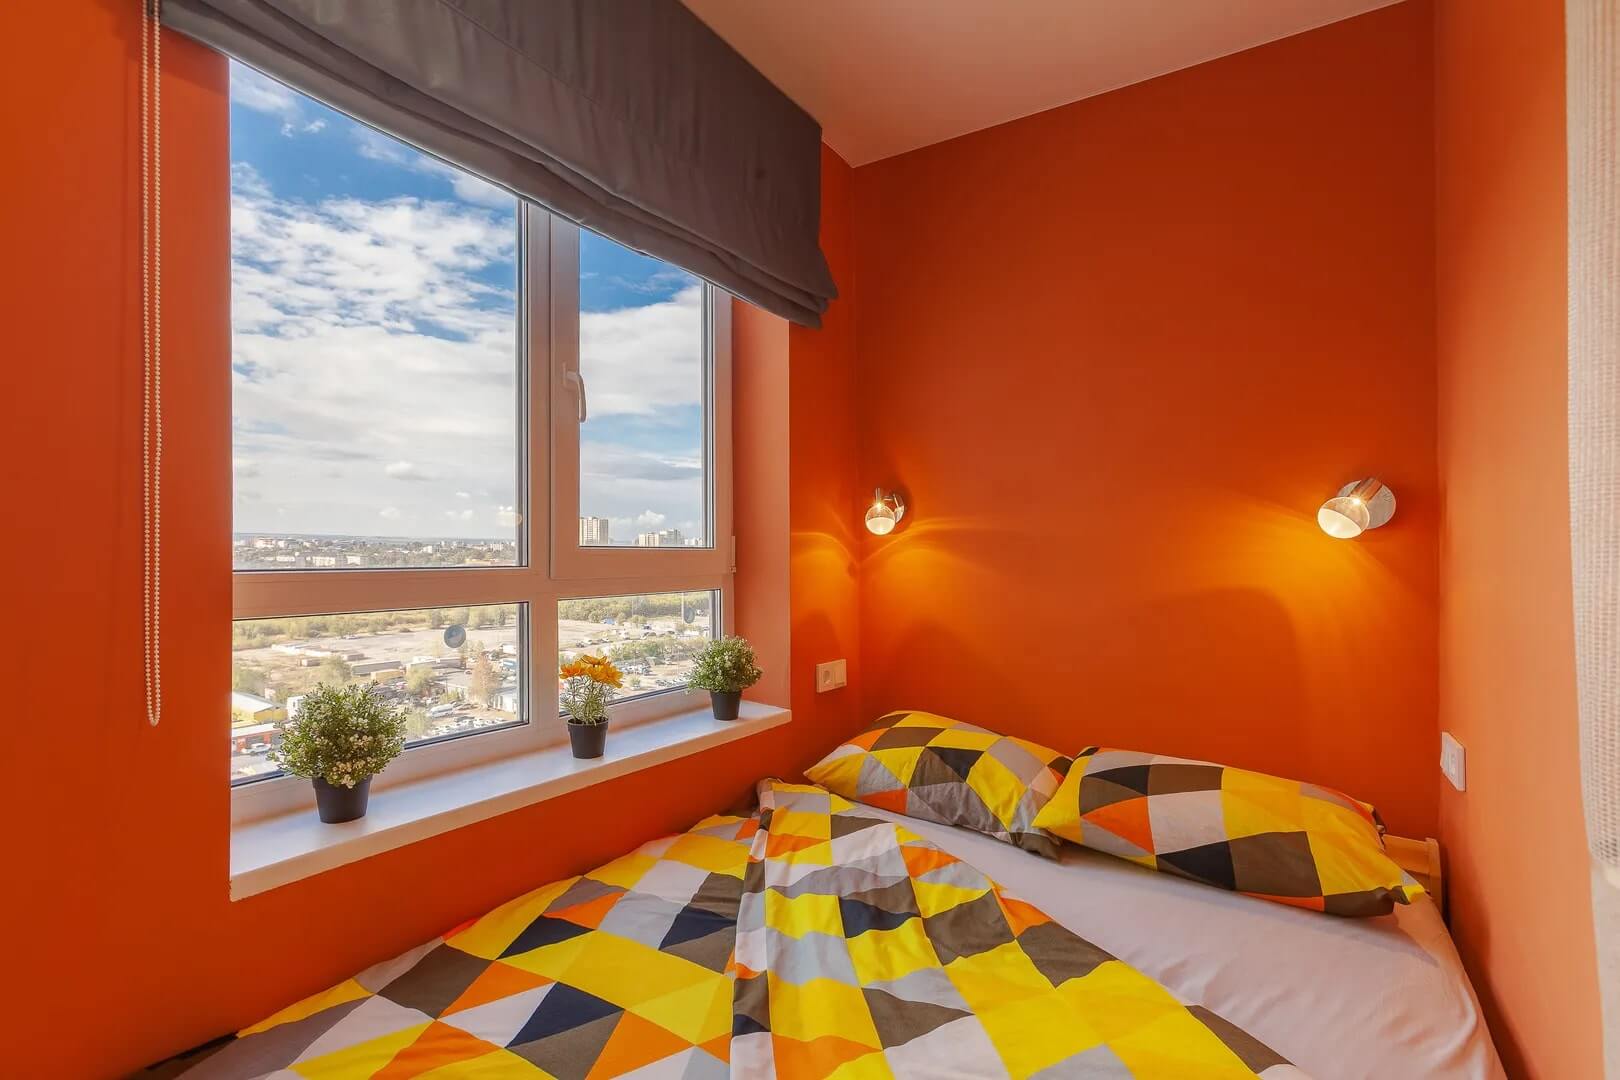 Кровать расположена у окна. Стены выкрашены в яркий оранжевый цвет.